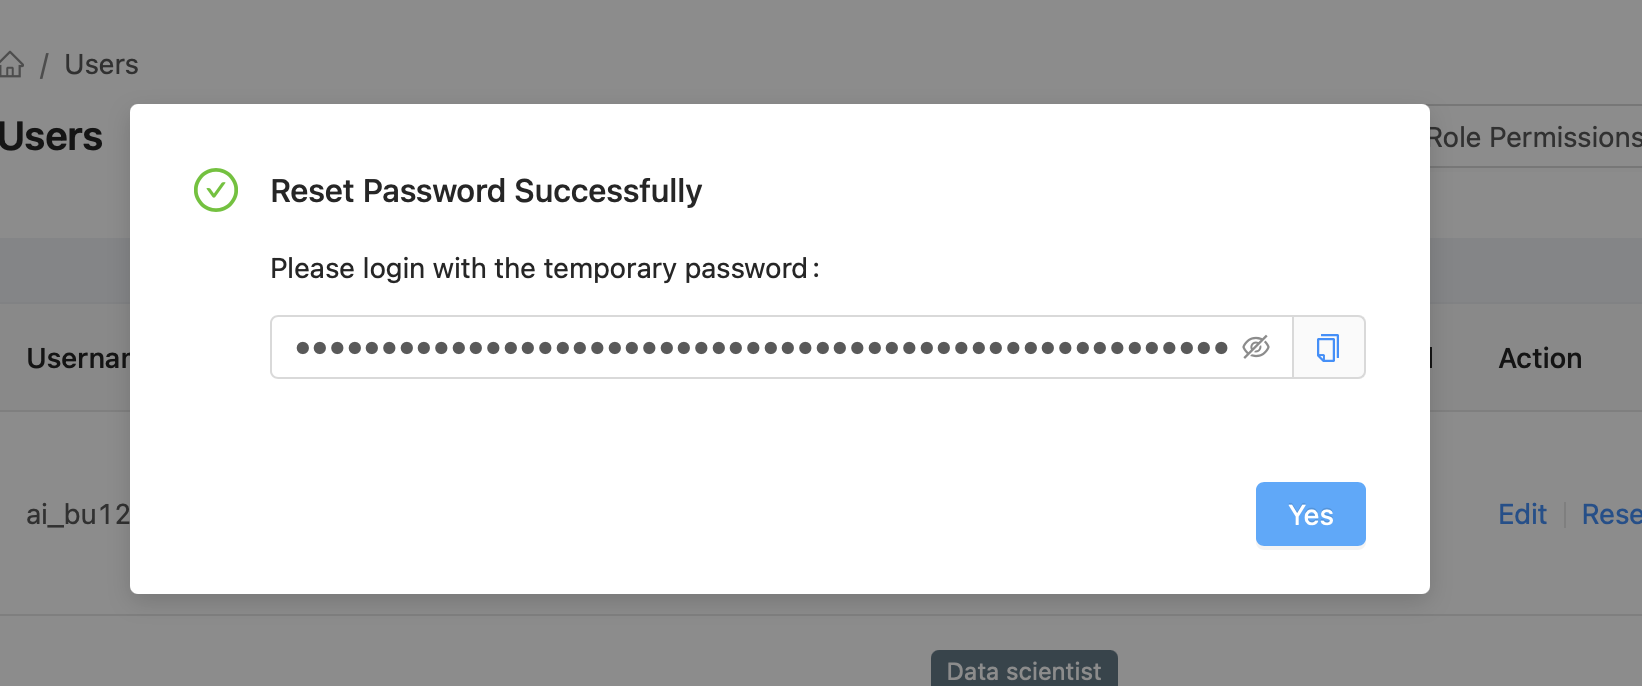 Reset Password Complete